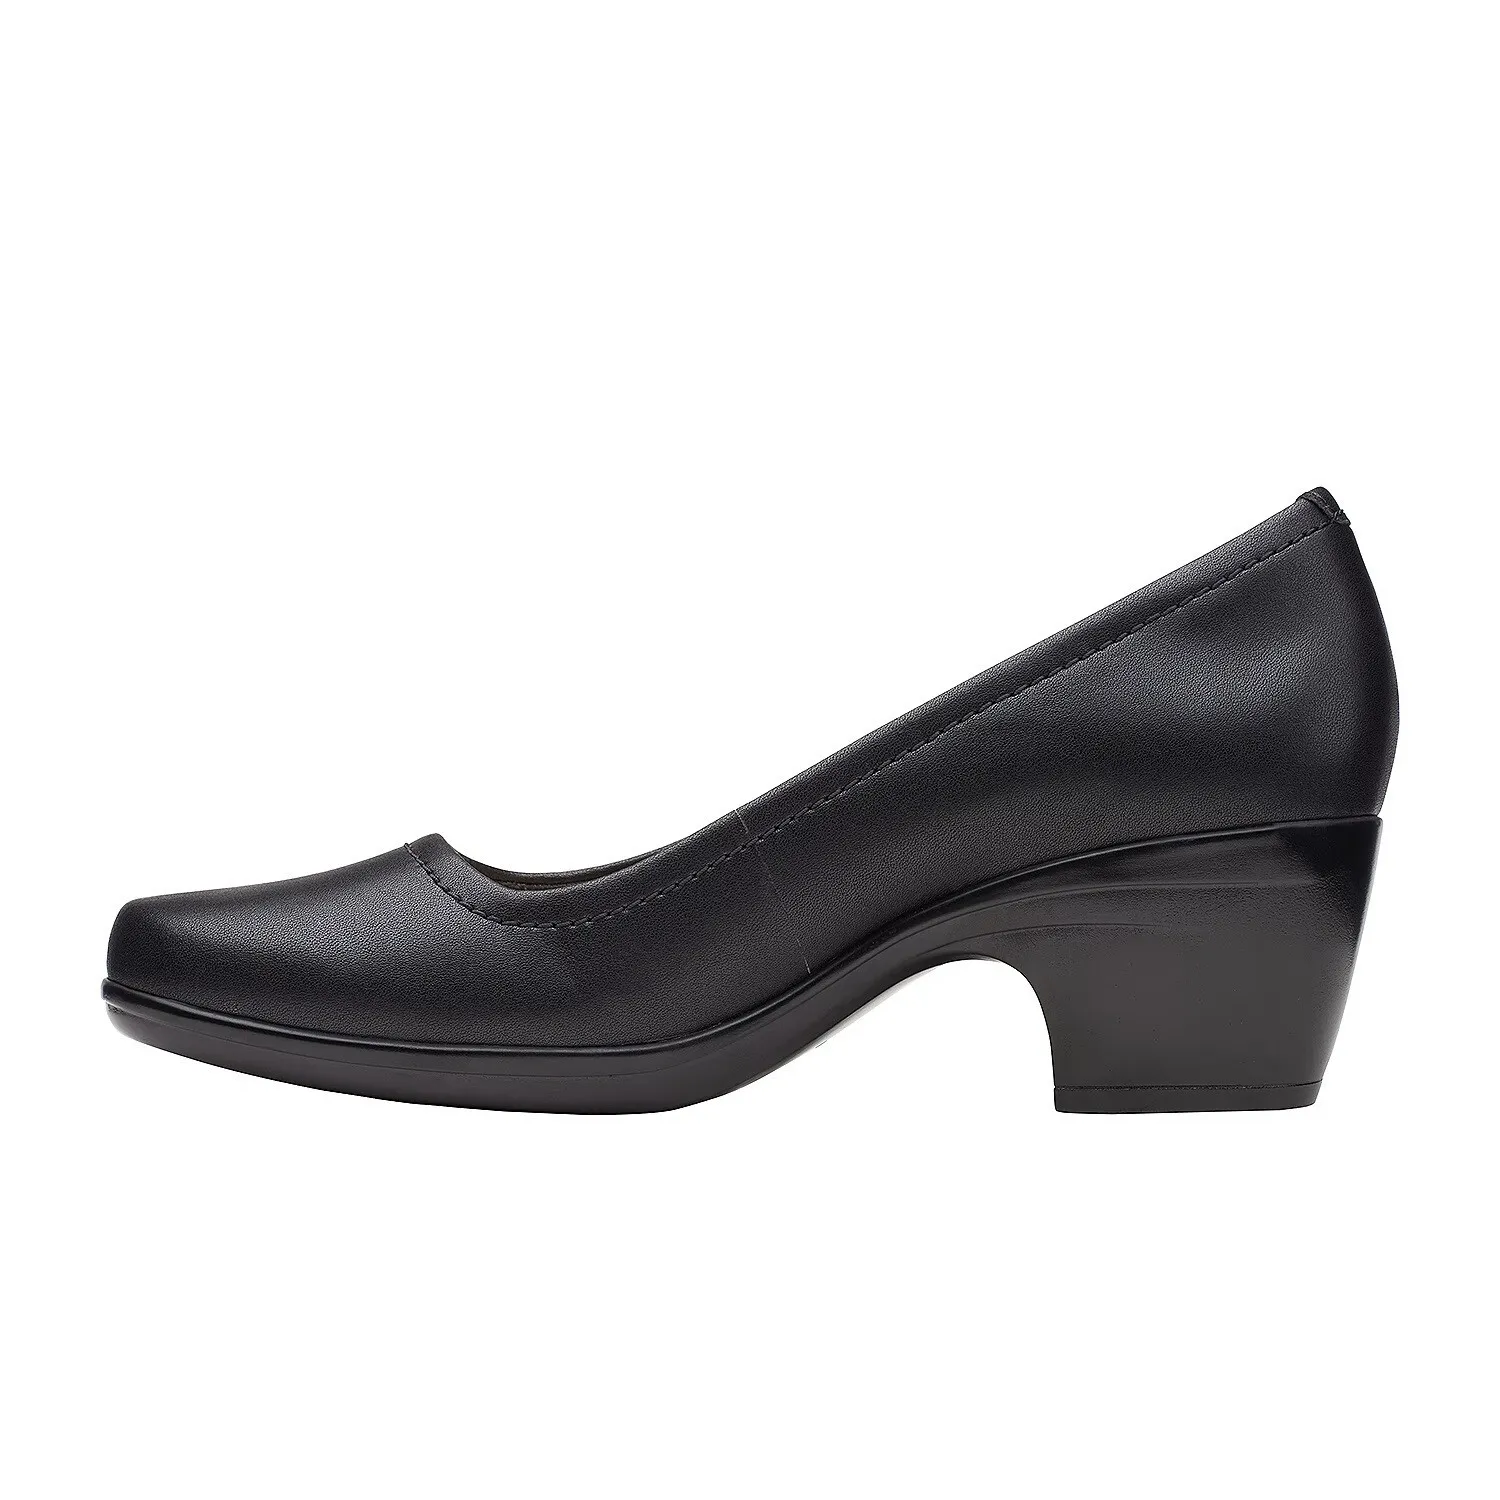 Женские туфли-лодочки Clarks, черные, цвет черный, размер 37 - фото 4